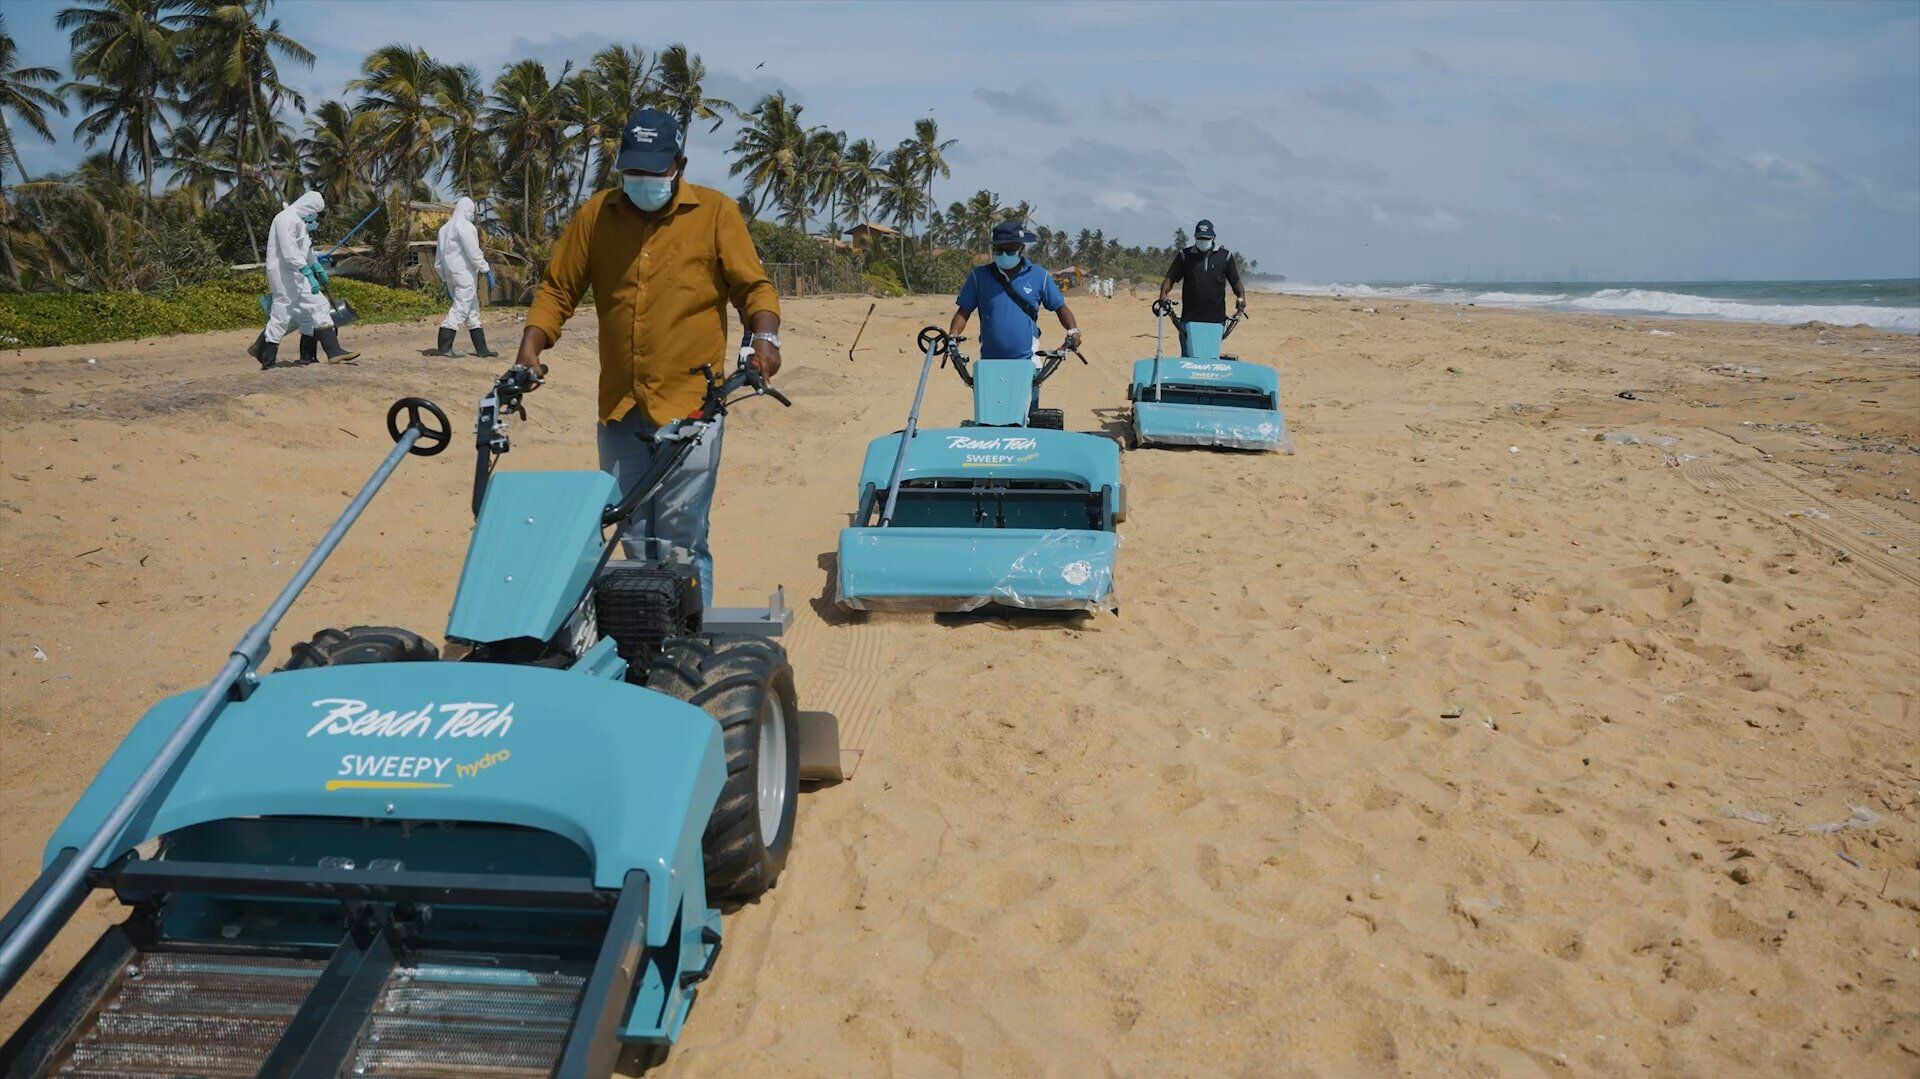 Tre pulispiaggia BeachTech sono utilizzati sulla spiaggia dello Sri Lanka per setacciare i nurdles dalla sabbia